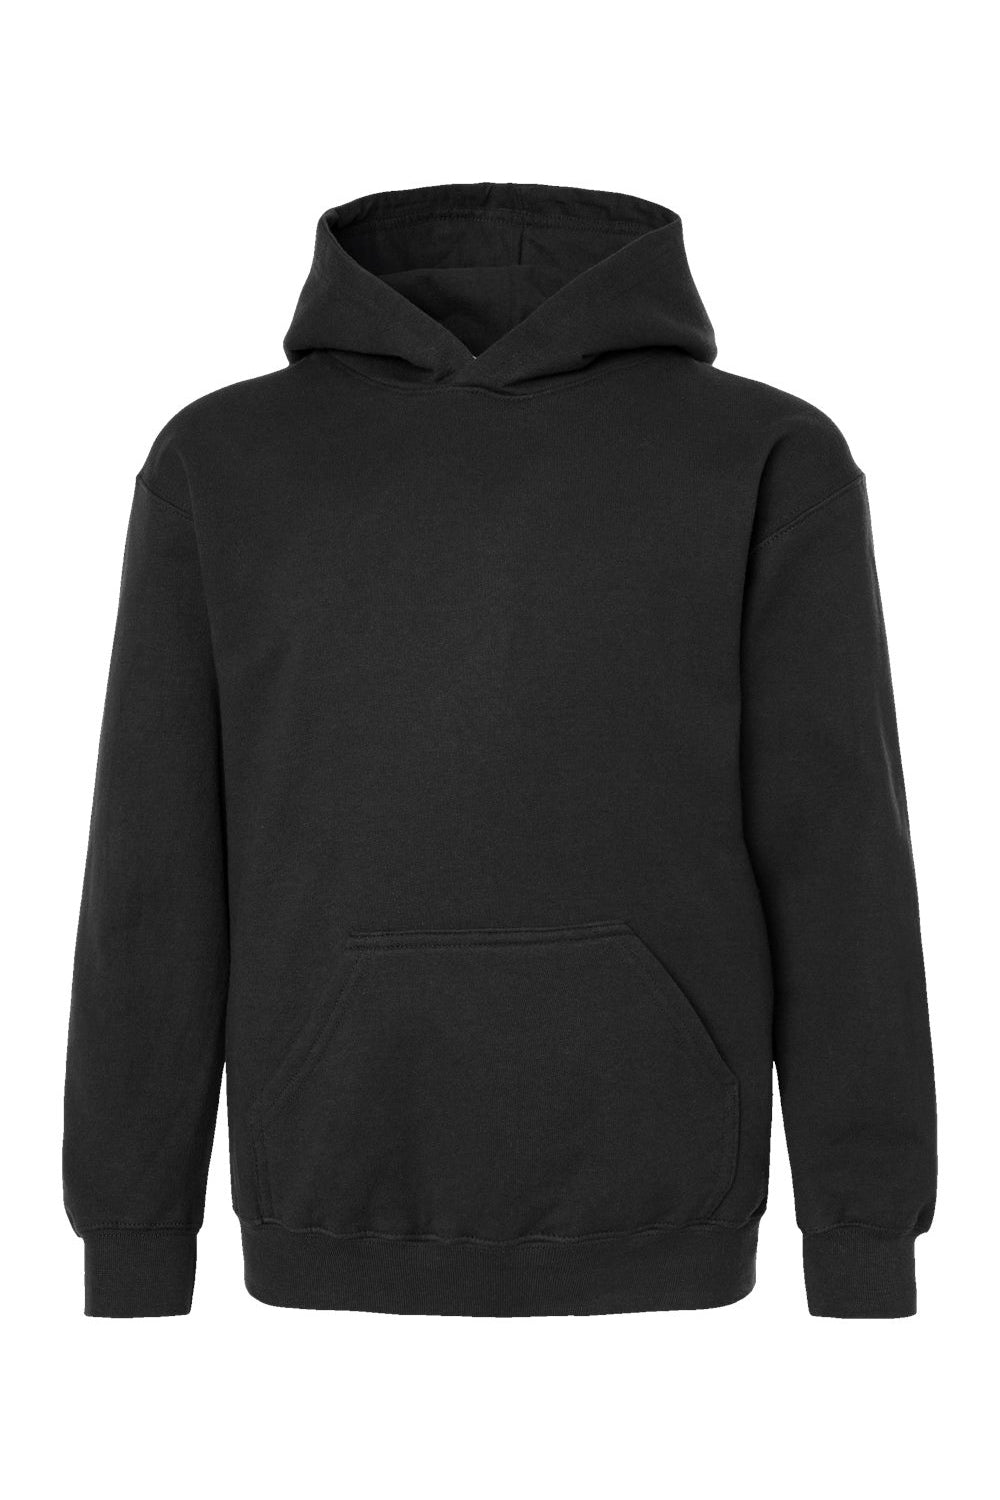 Tultex 320Y Youth Hooded Sweatshirt Hoodie Black Flat Front